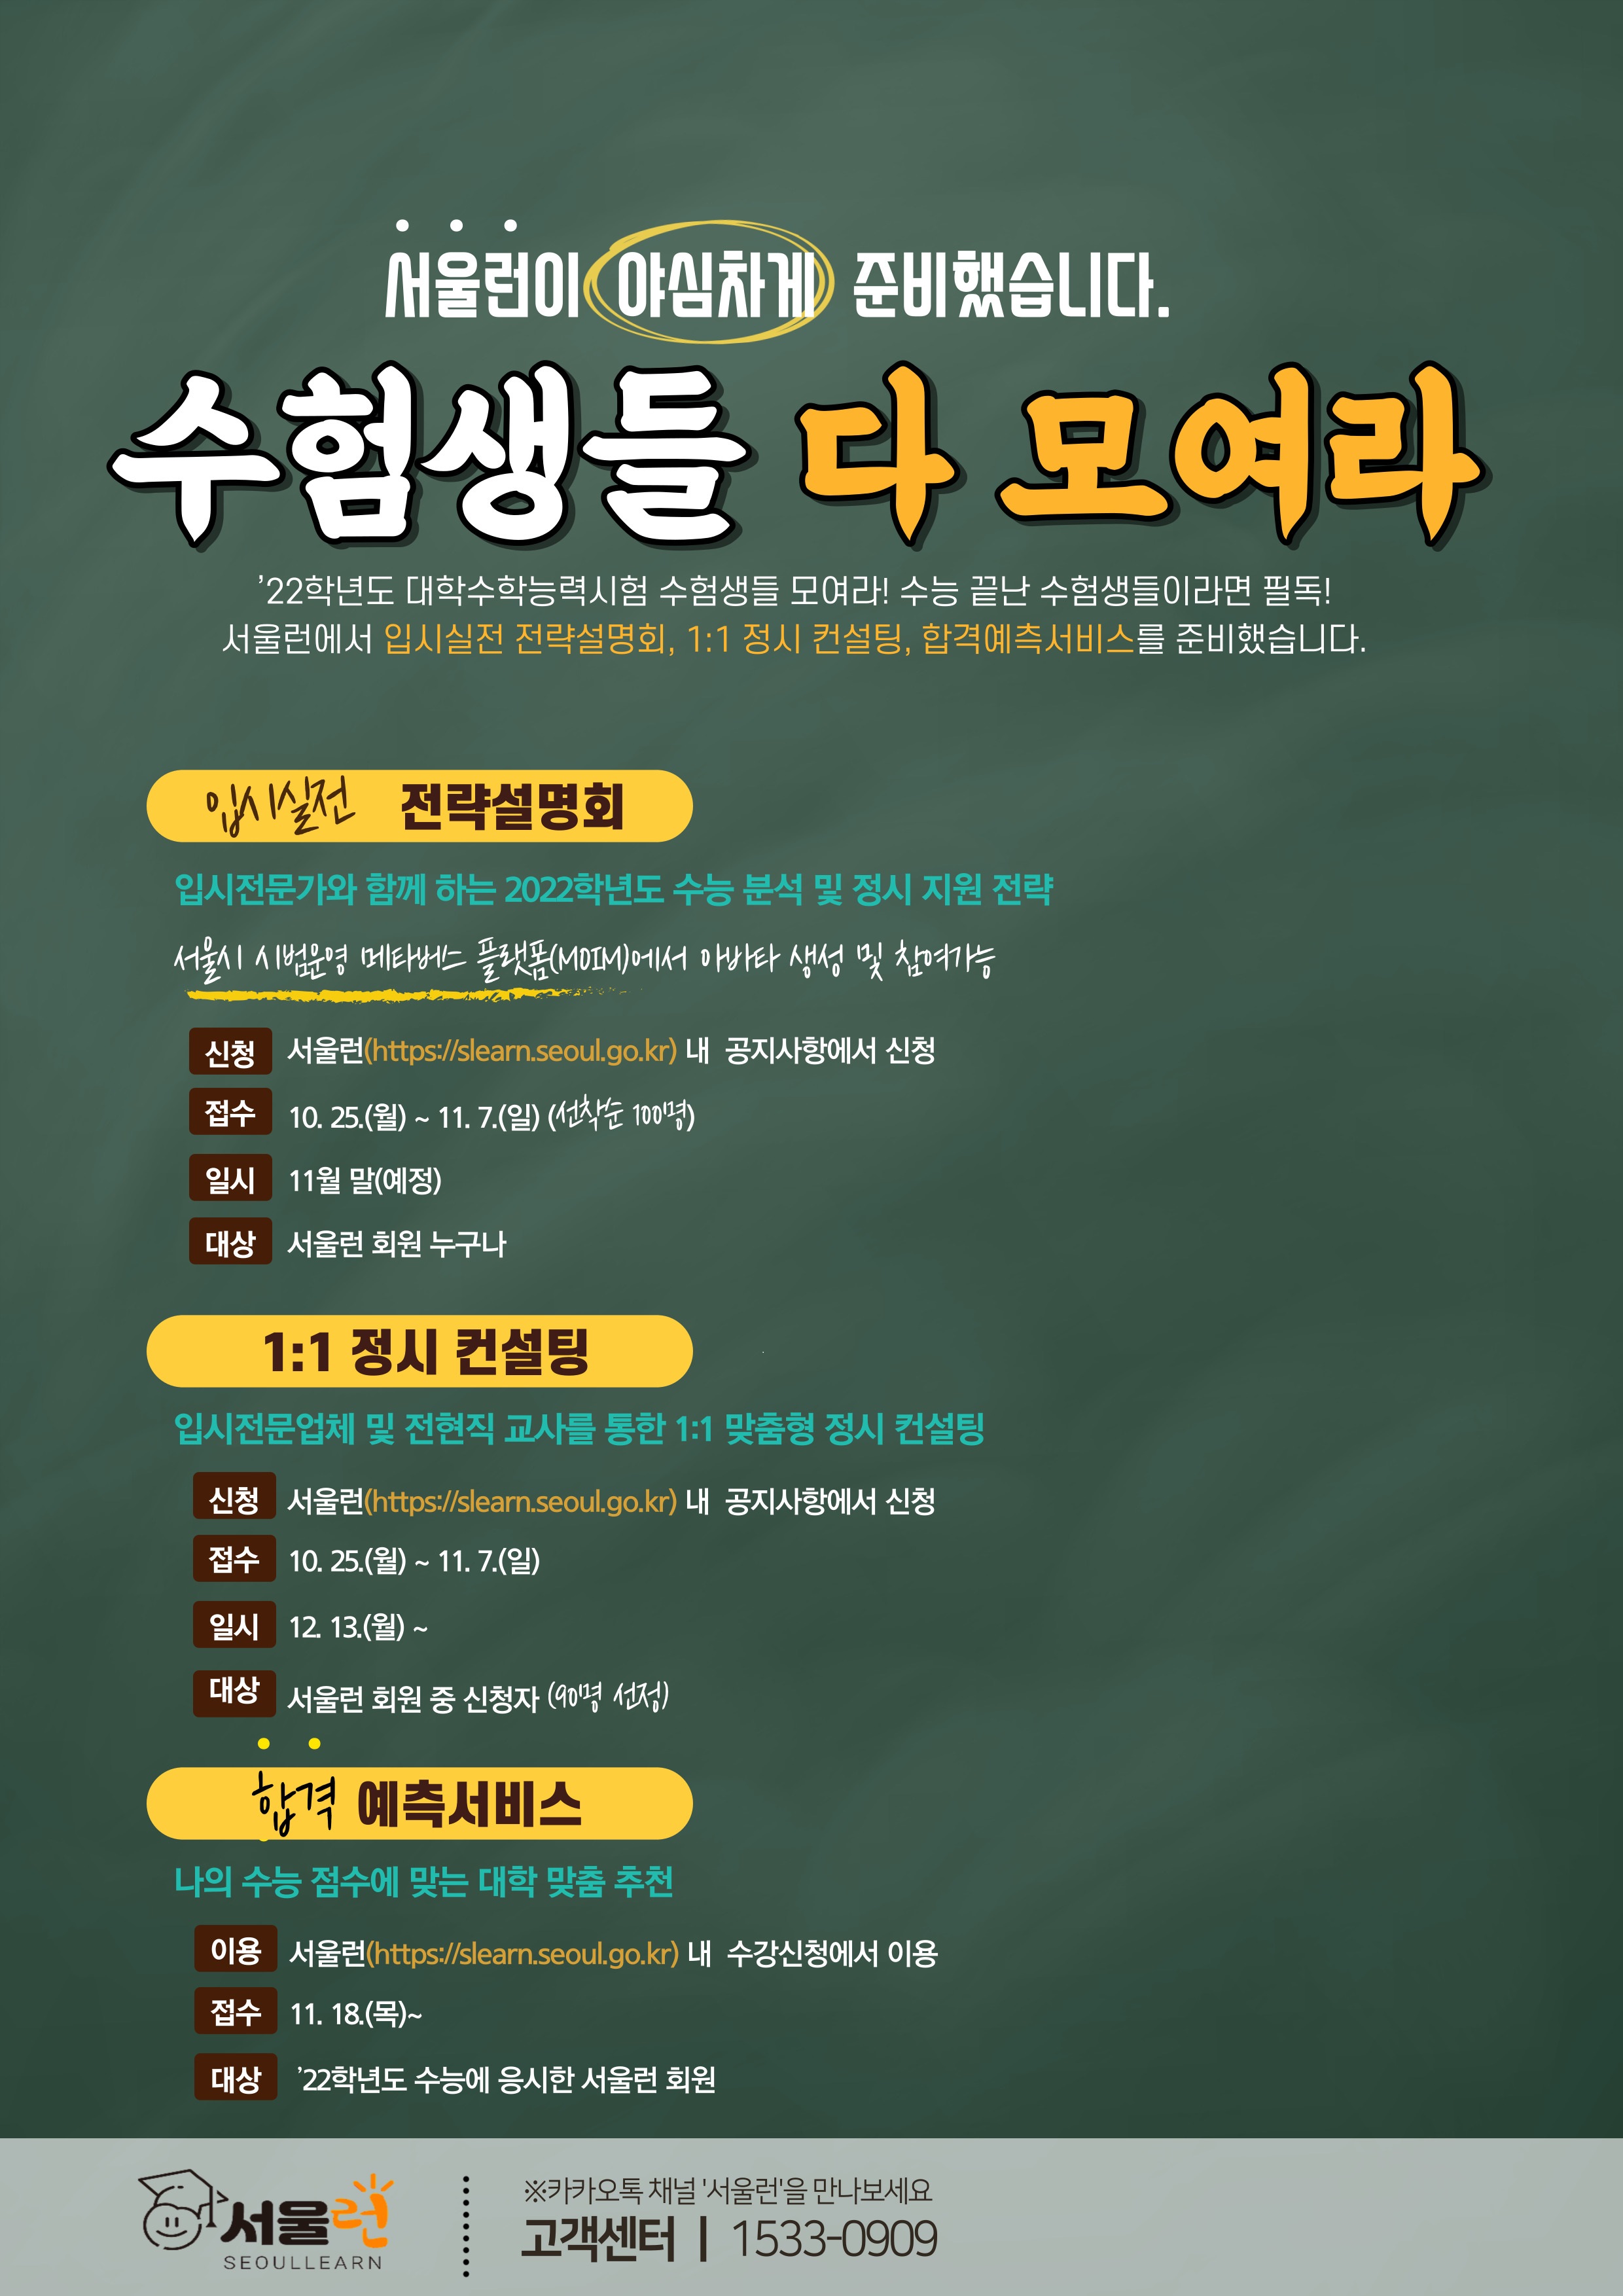 서울런 메타버스 2차 프로젝트 등 입시 서비스 제공 정보 